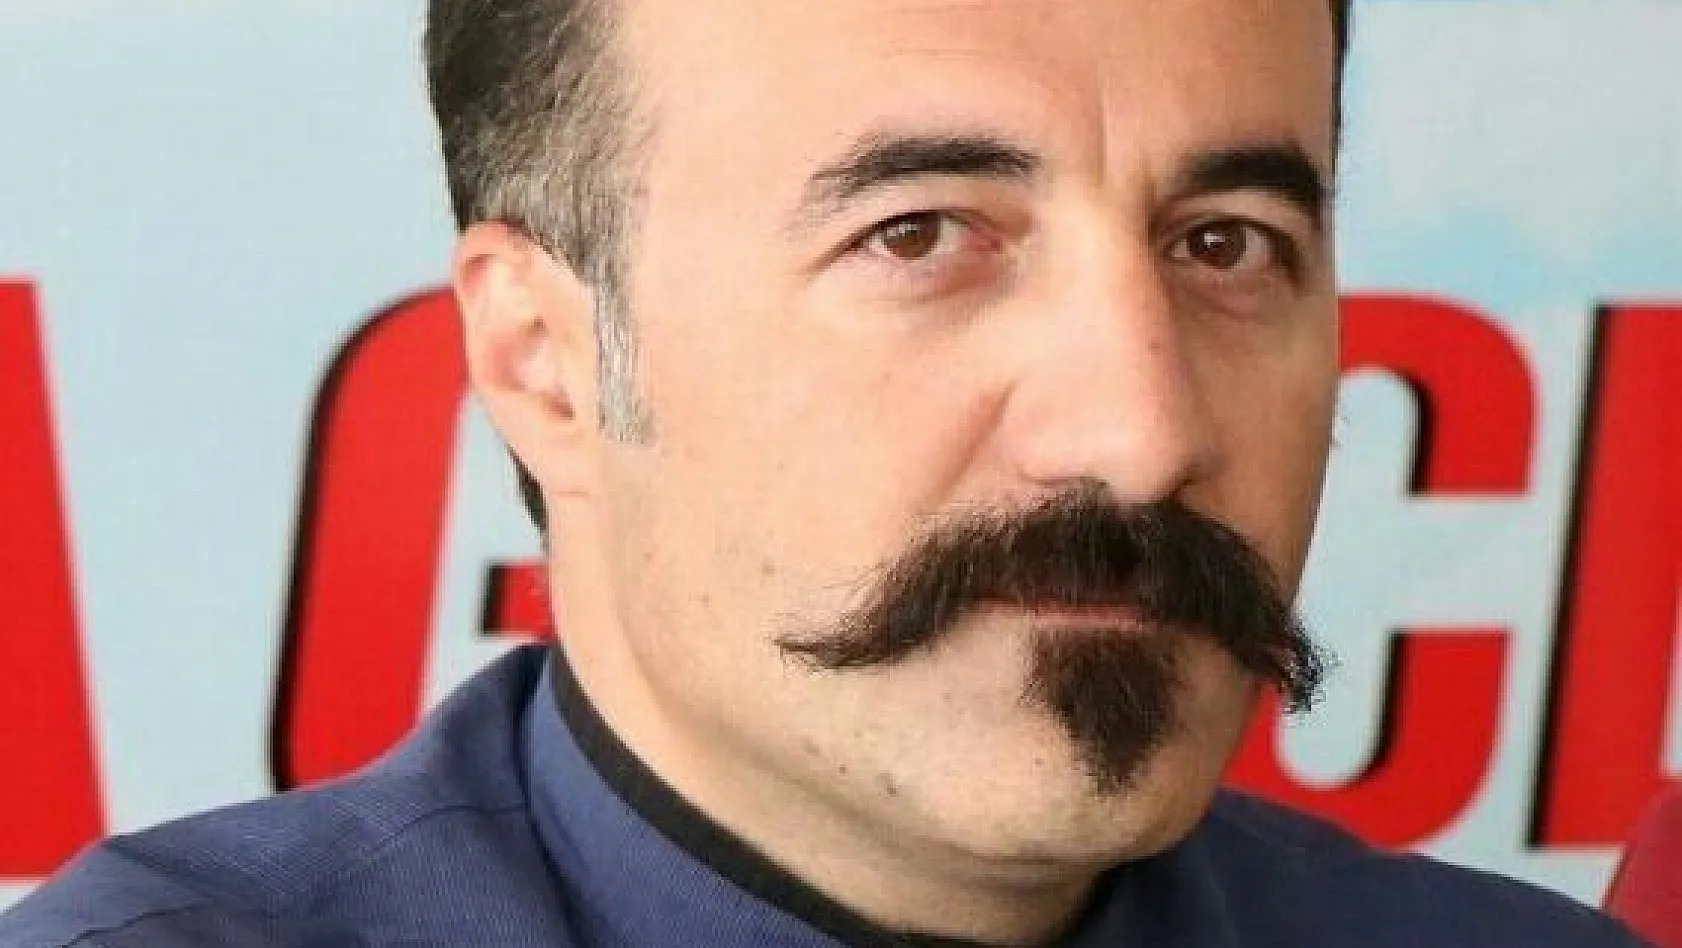 TRT Çerkes davasında verilen yakalama kararı kaldırıldı
